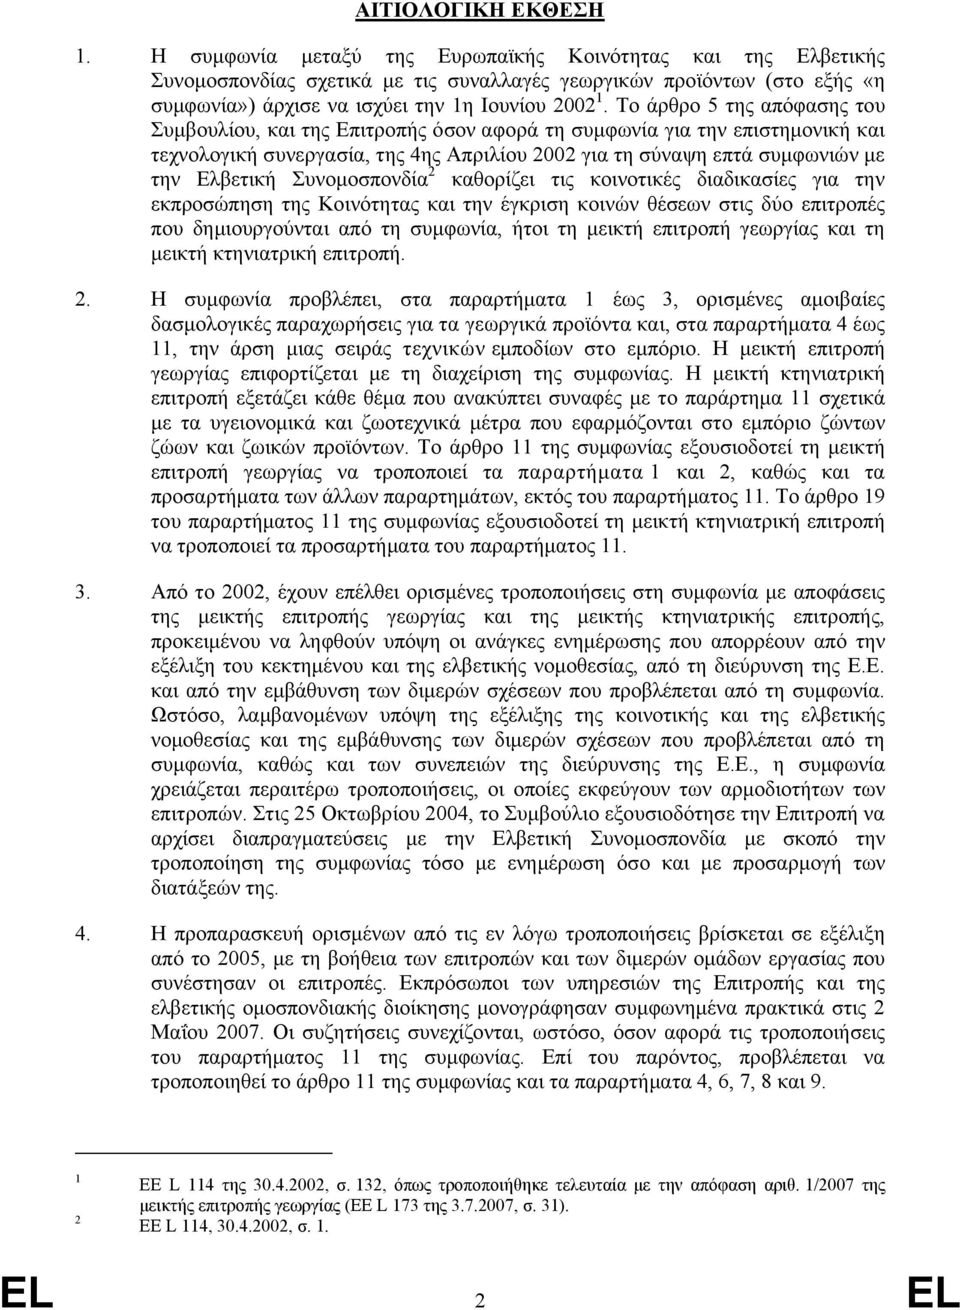 Το άρθρο 5 της απόφασης του Συμβουλίου, και της Επιτροπής όσον αφορά τη συμφωνία για την επιστημονική και τεχνολογική συνεργασία, της 4ης Απριλίου 2002 για τη σύναψη επτά συμφωνιών με την Ελβετική